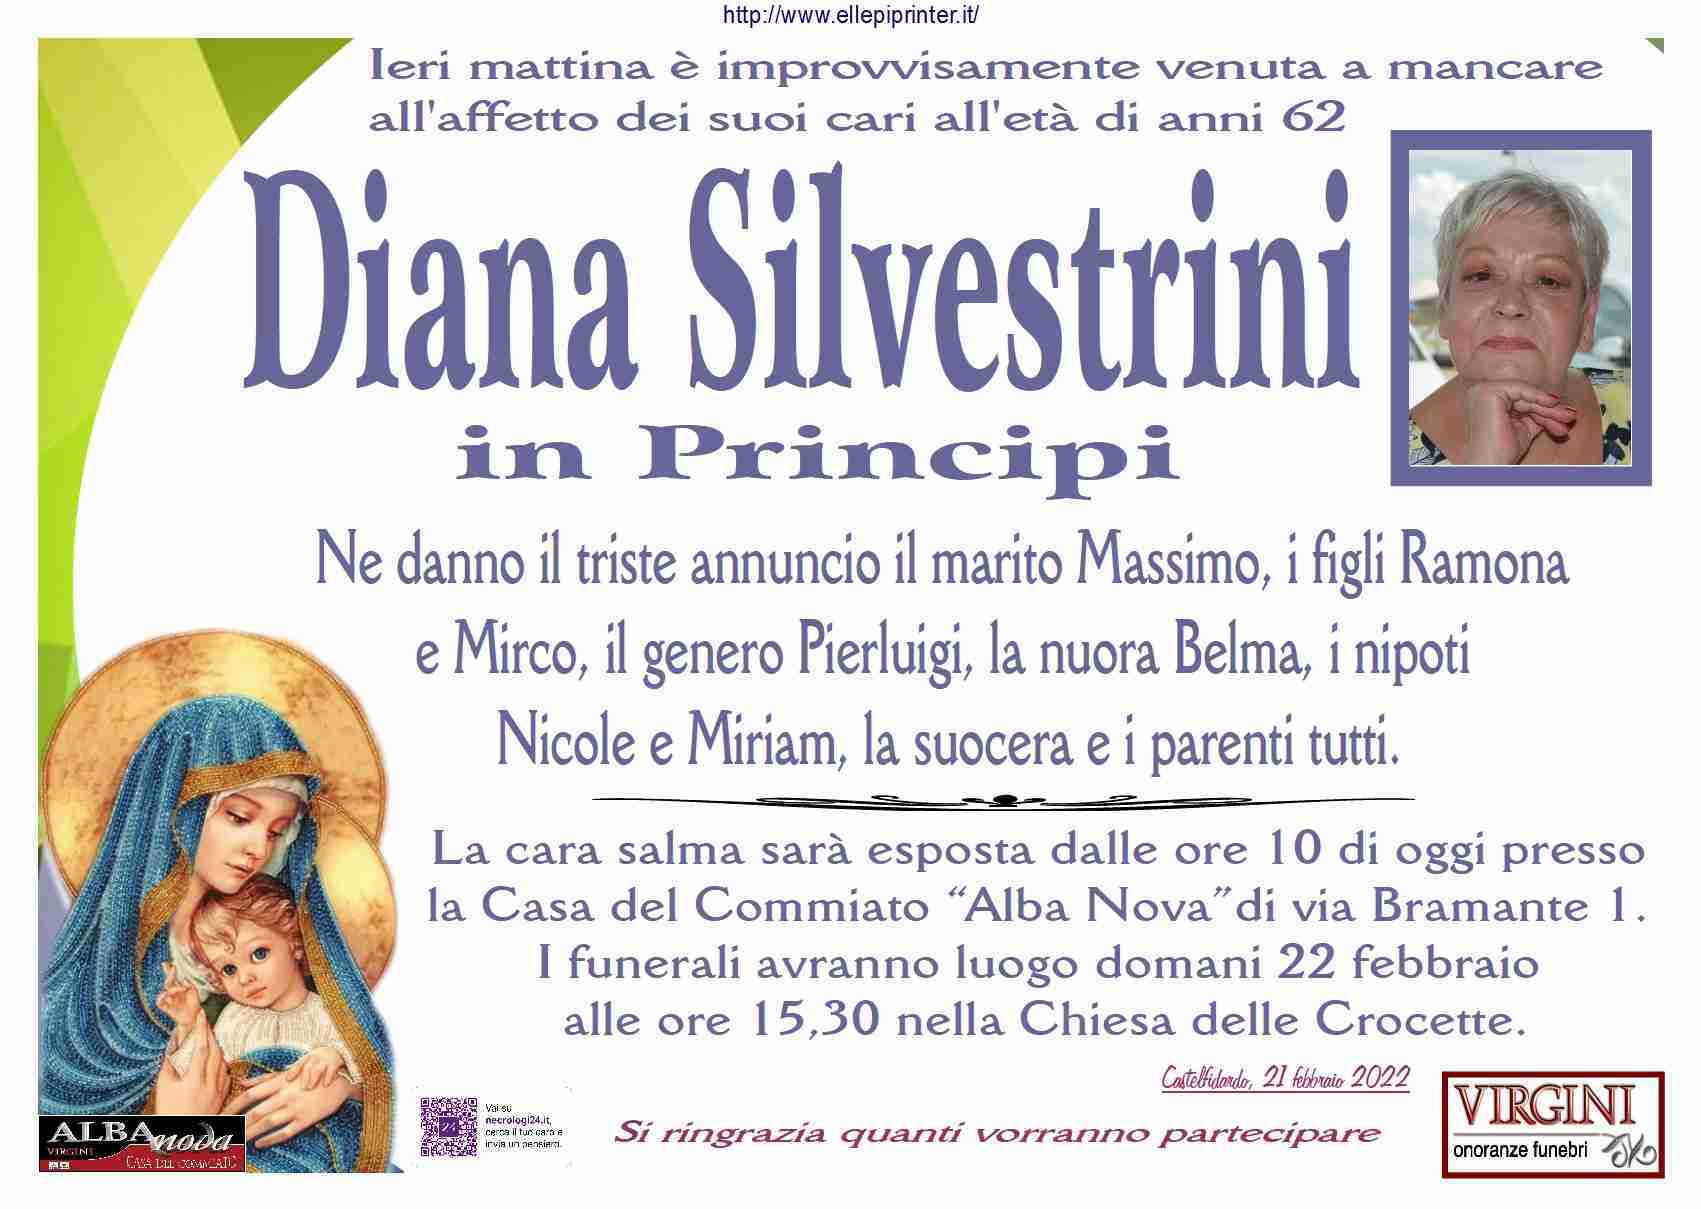 Diana Silvestrini